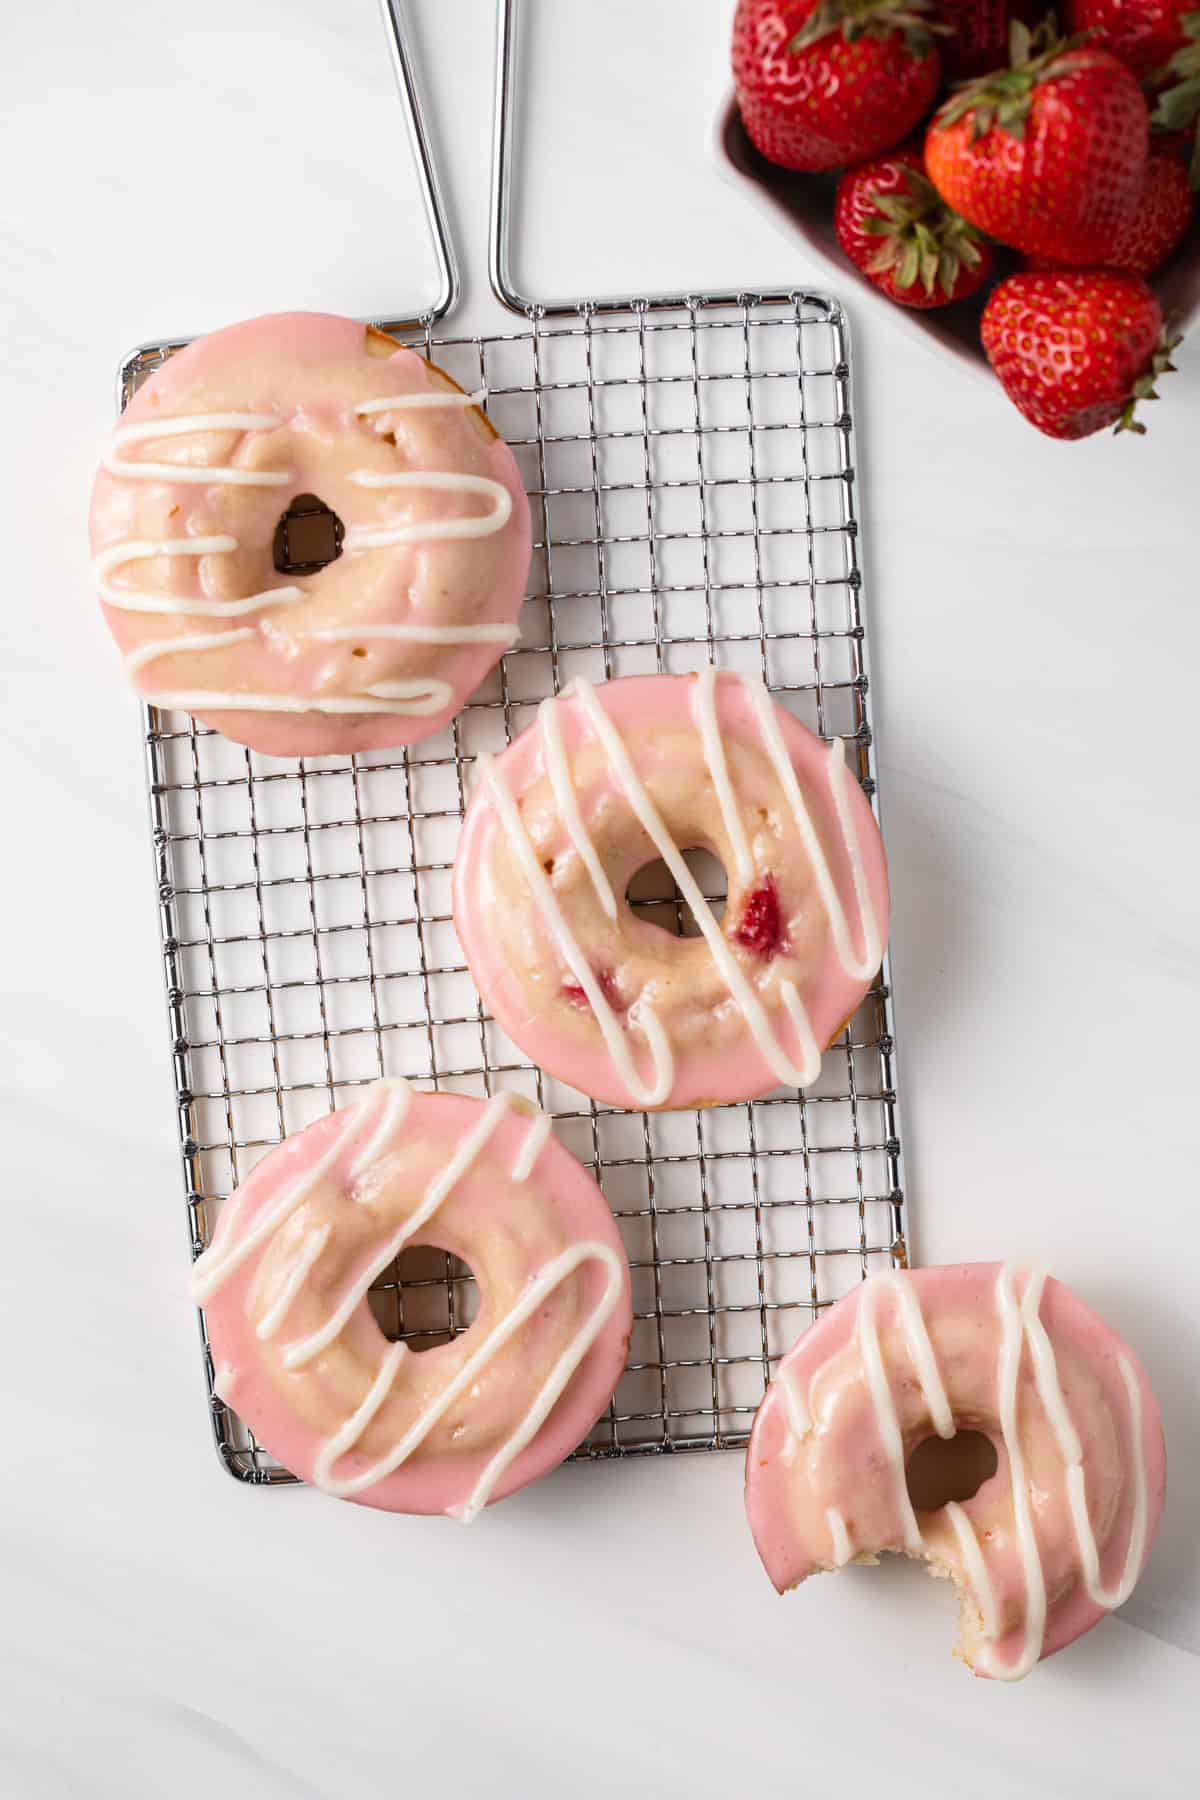 Glazed strawberry donuts on a wire rack